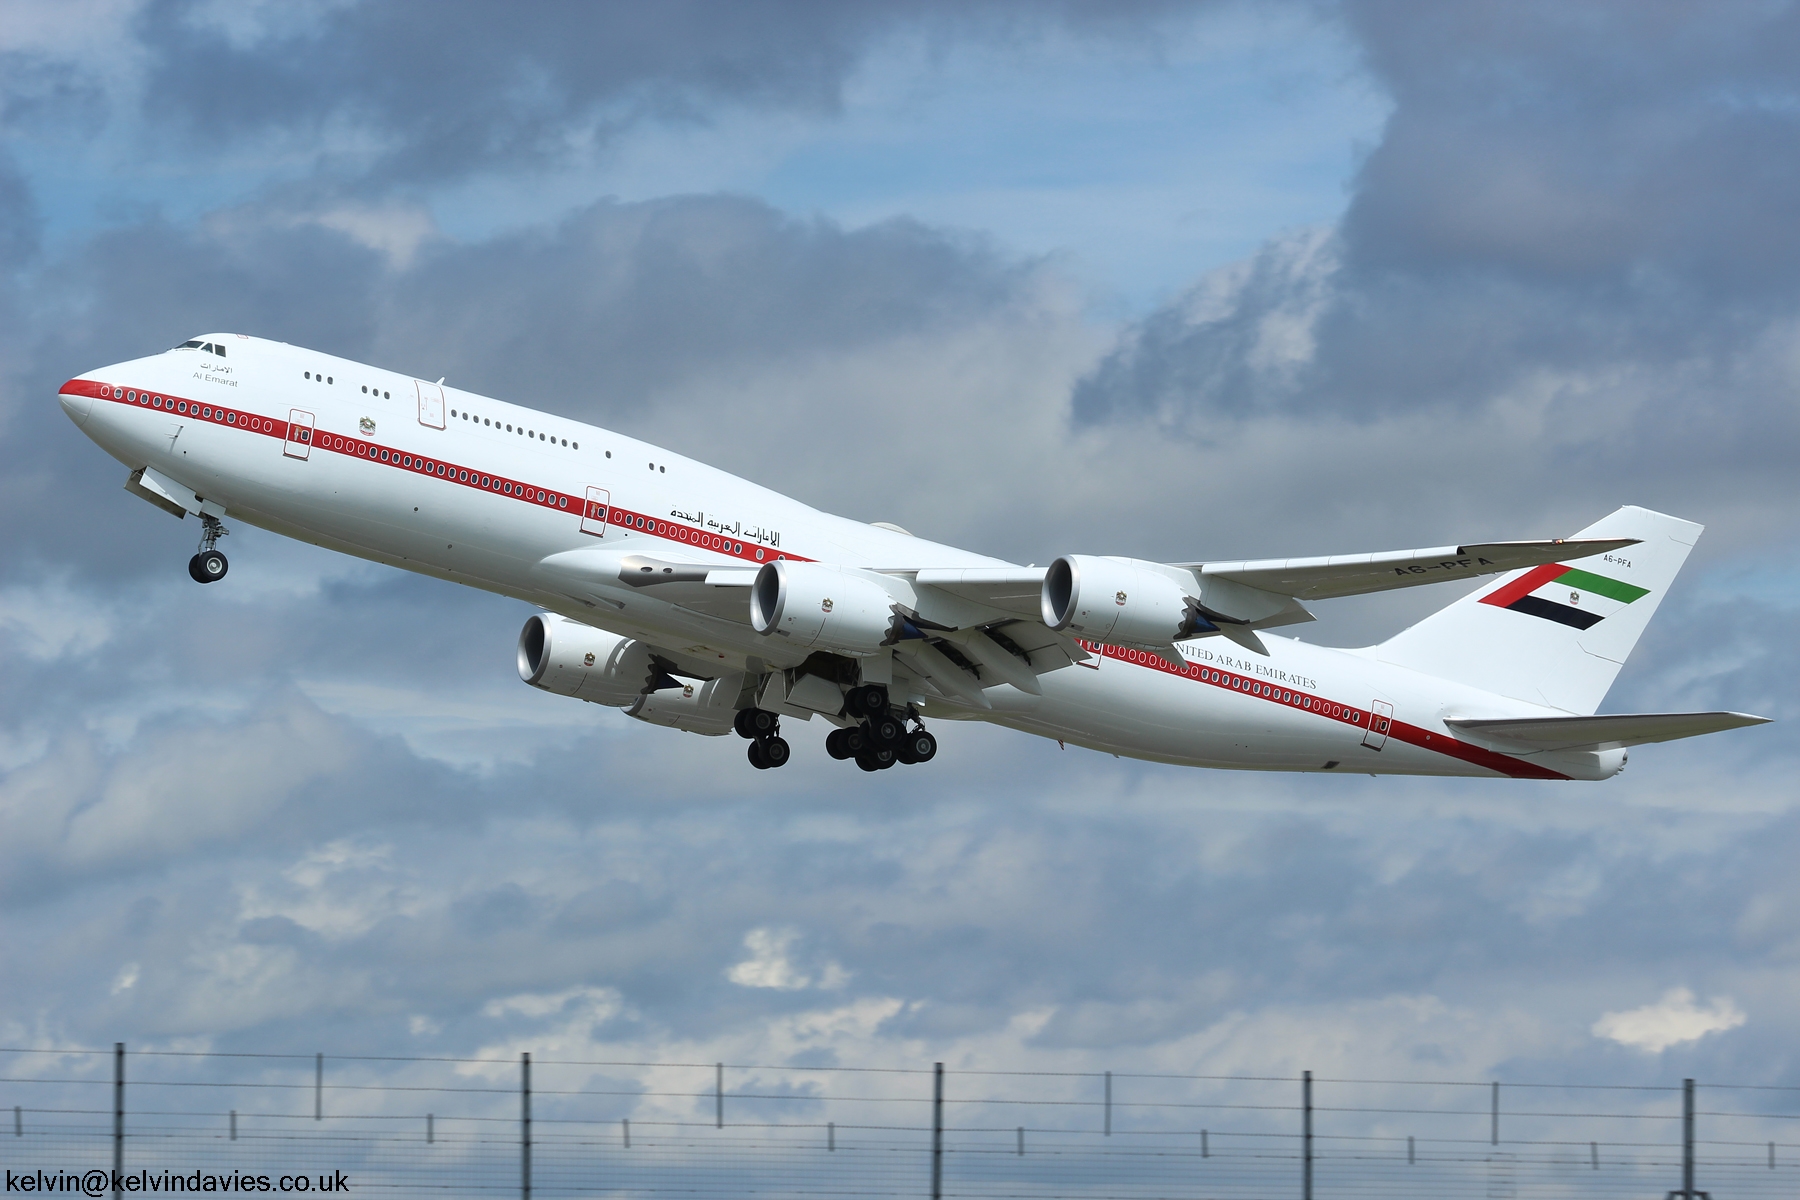 Abu Dhabi Emiri flight 747 A6-PFA